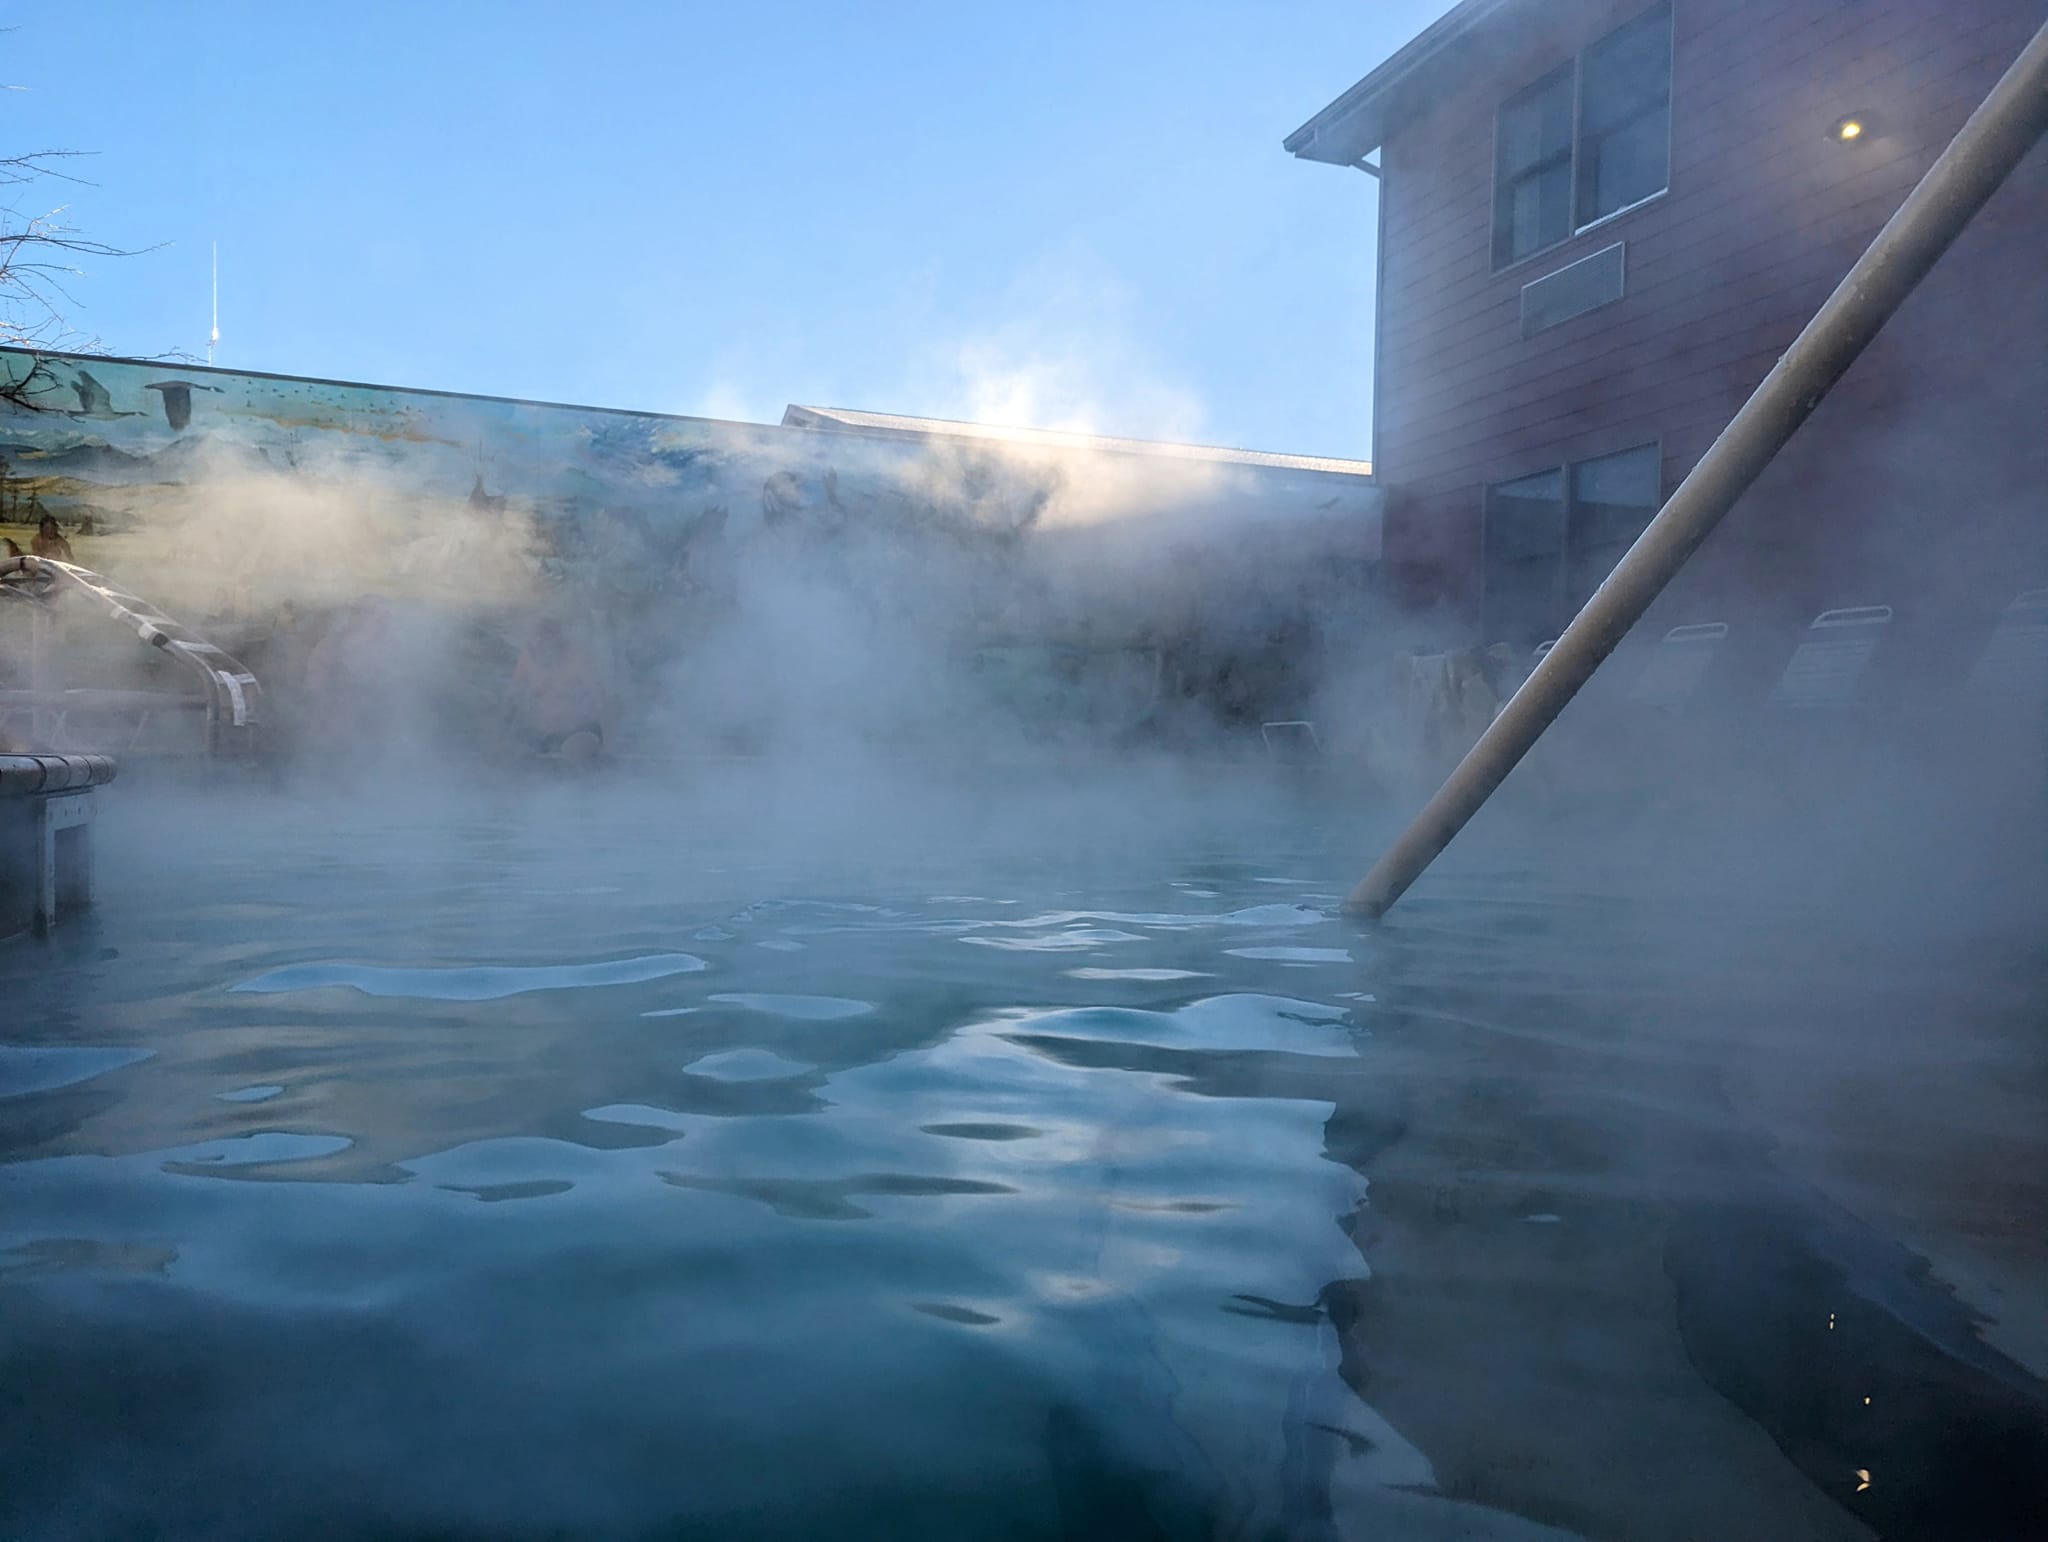 Hot Springs Pool